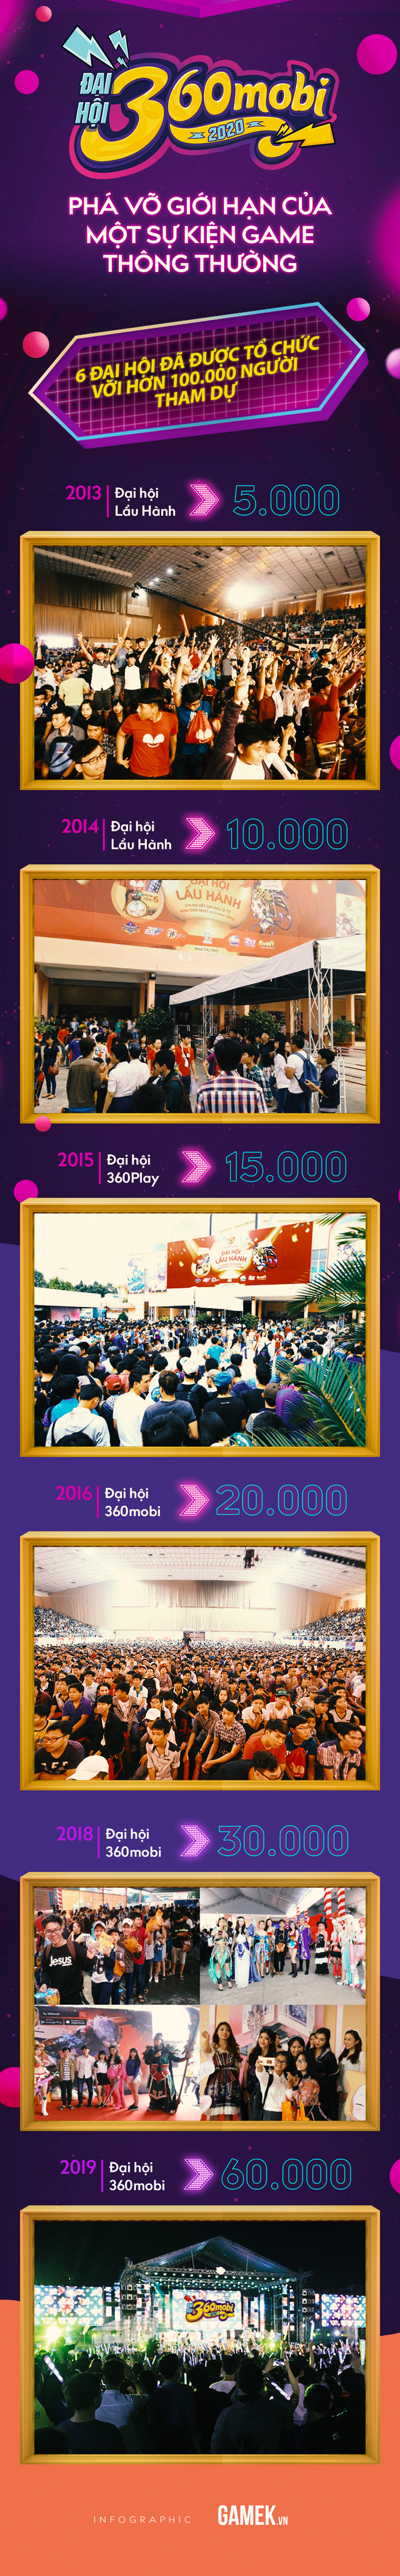 Đại hội 360mobi 2020 - Sự kiện Game lớn nhất Việt Nam đầu năm 2020 - Ảnh 1.